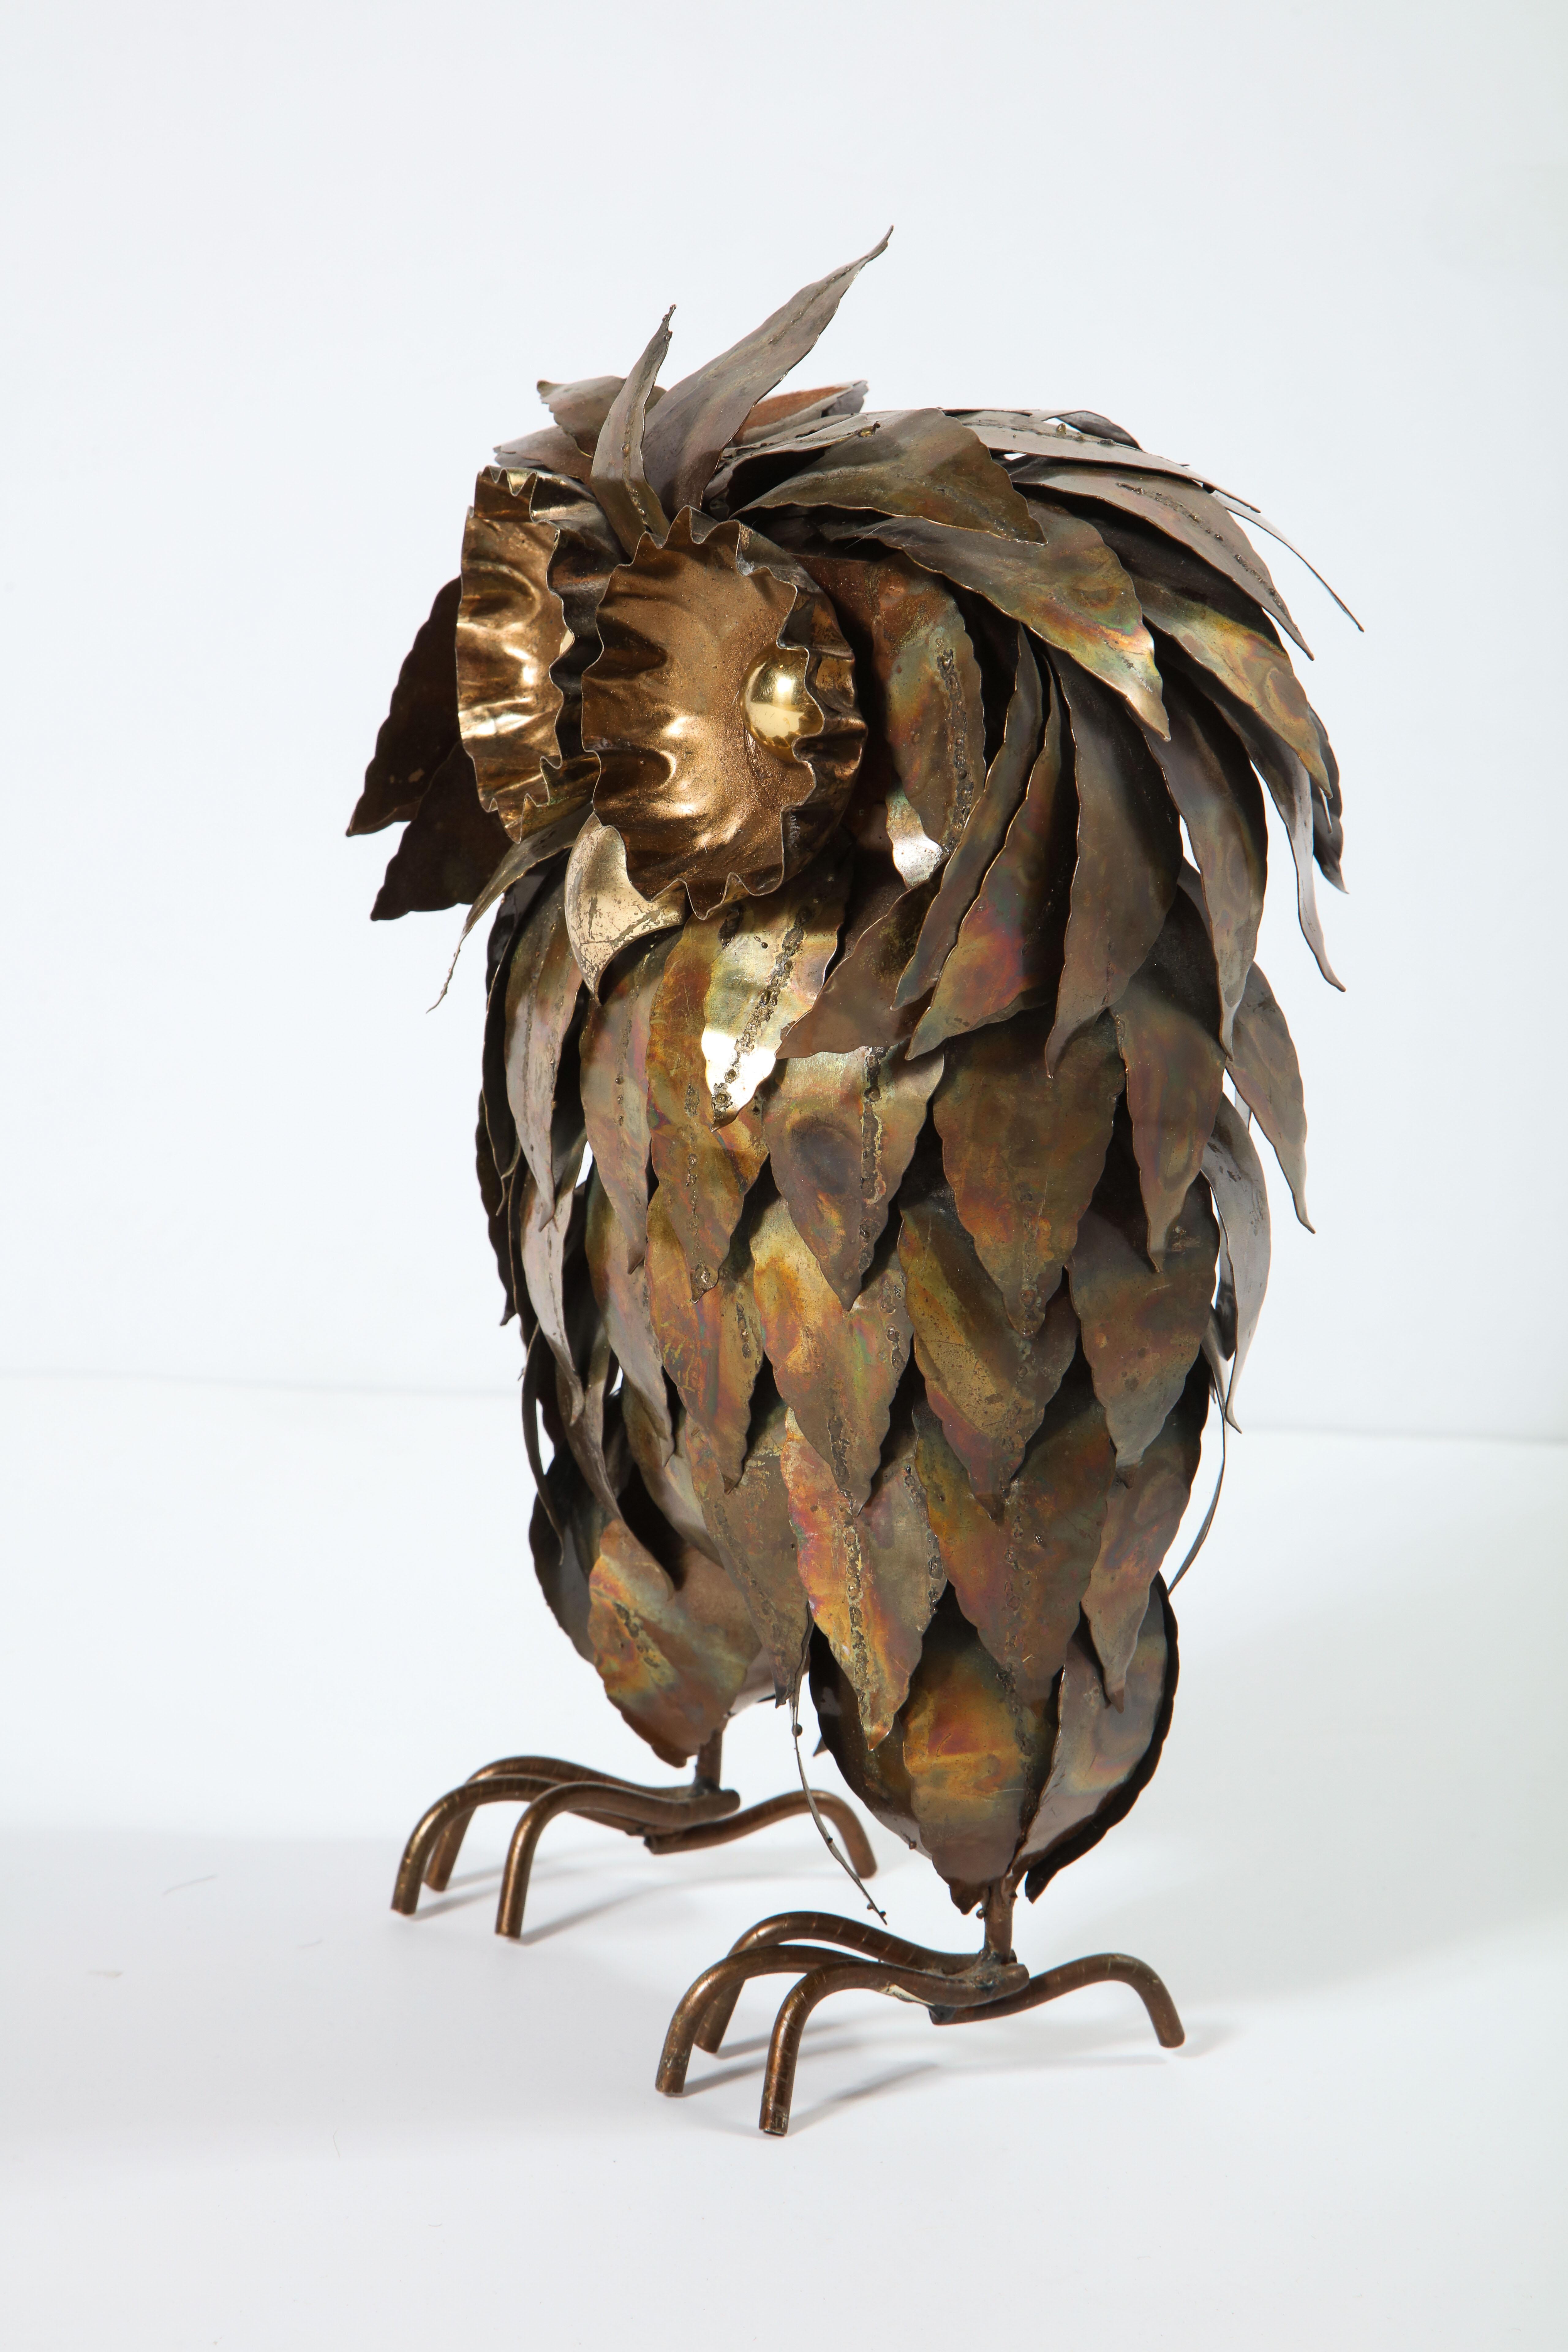 Mid-Century Modern Sculpture, Decorative Owl, Brass, Vintage Brass, Midcentury Design, circa 1950